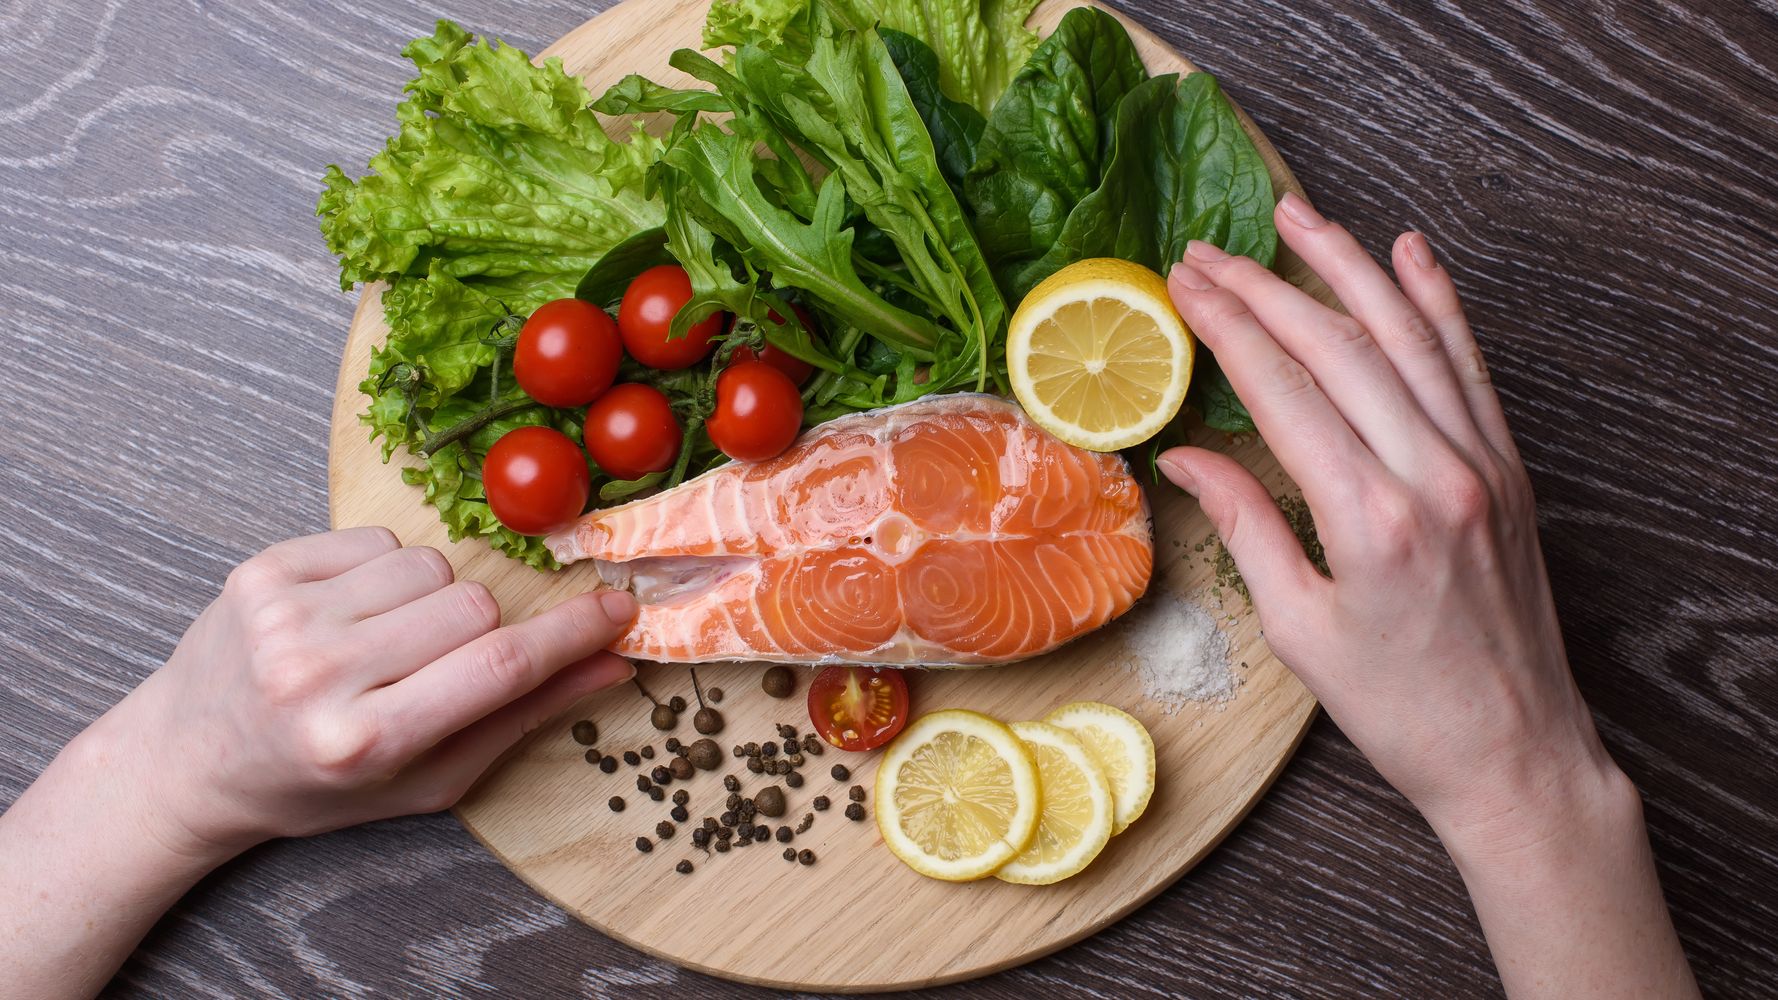 सैल्मन खाना आपकी त्वचा के लिए इतना अच्छा क्यों है |  हफपोस्ट लाइफ